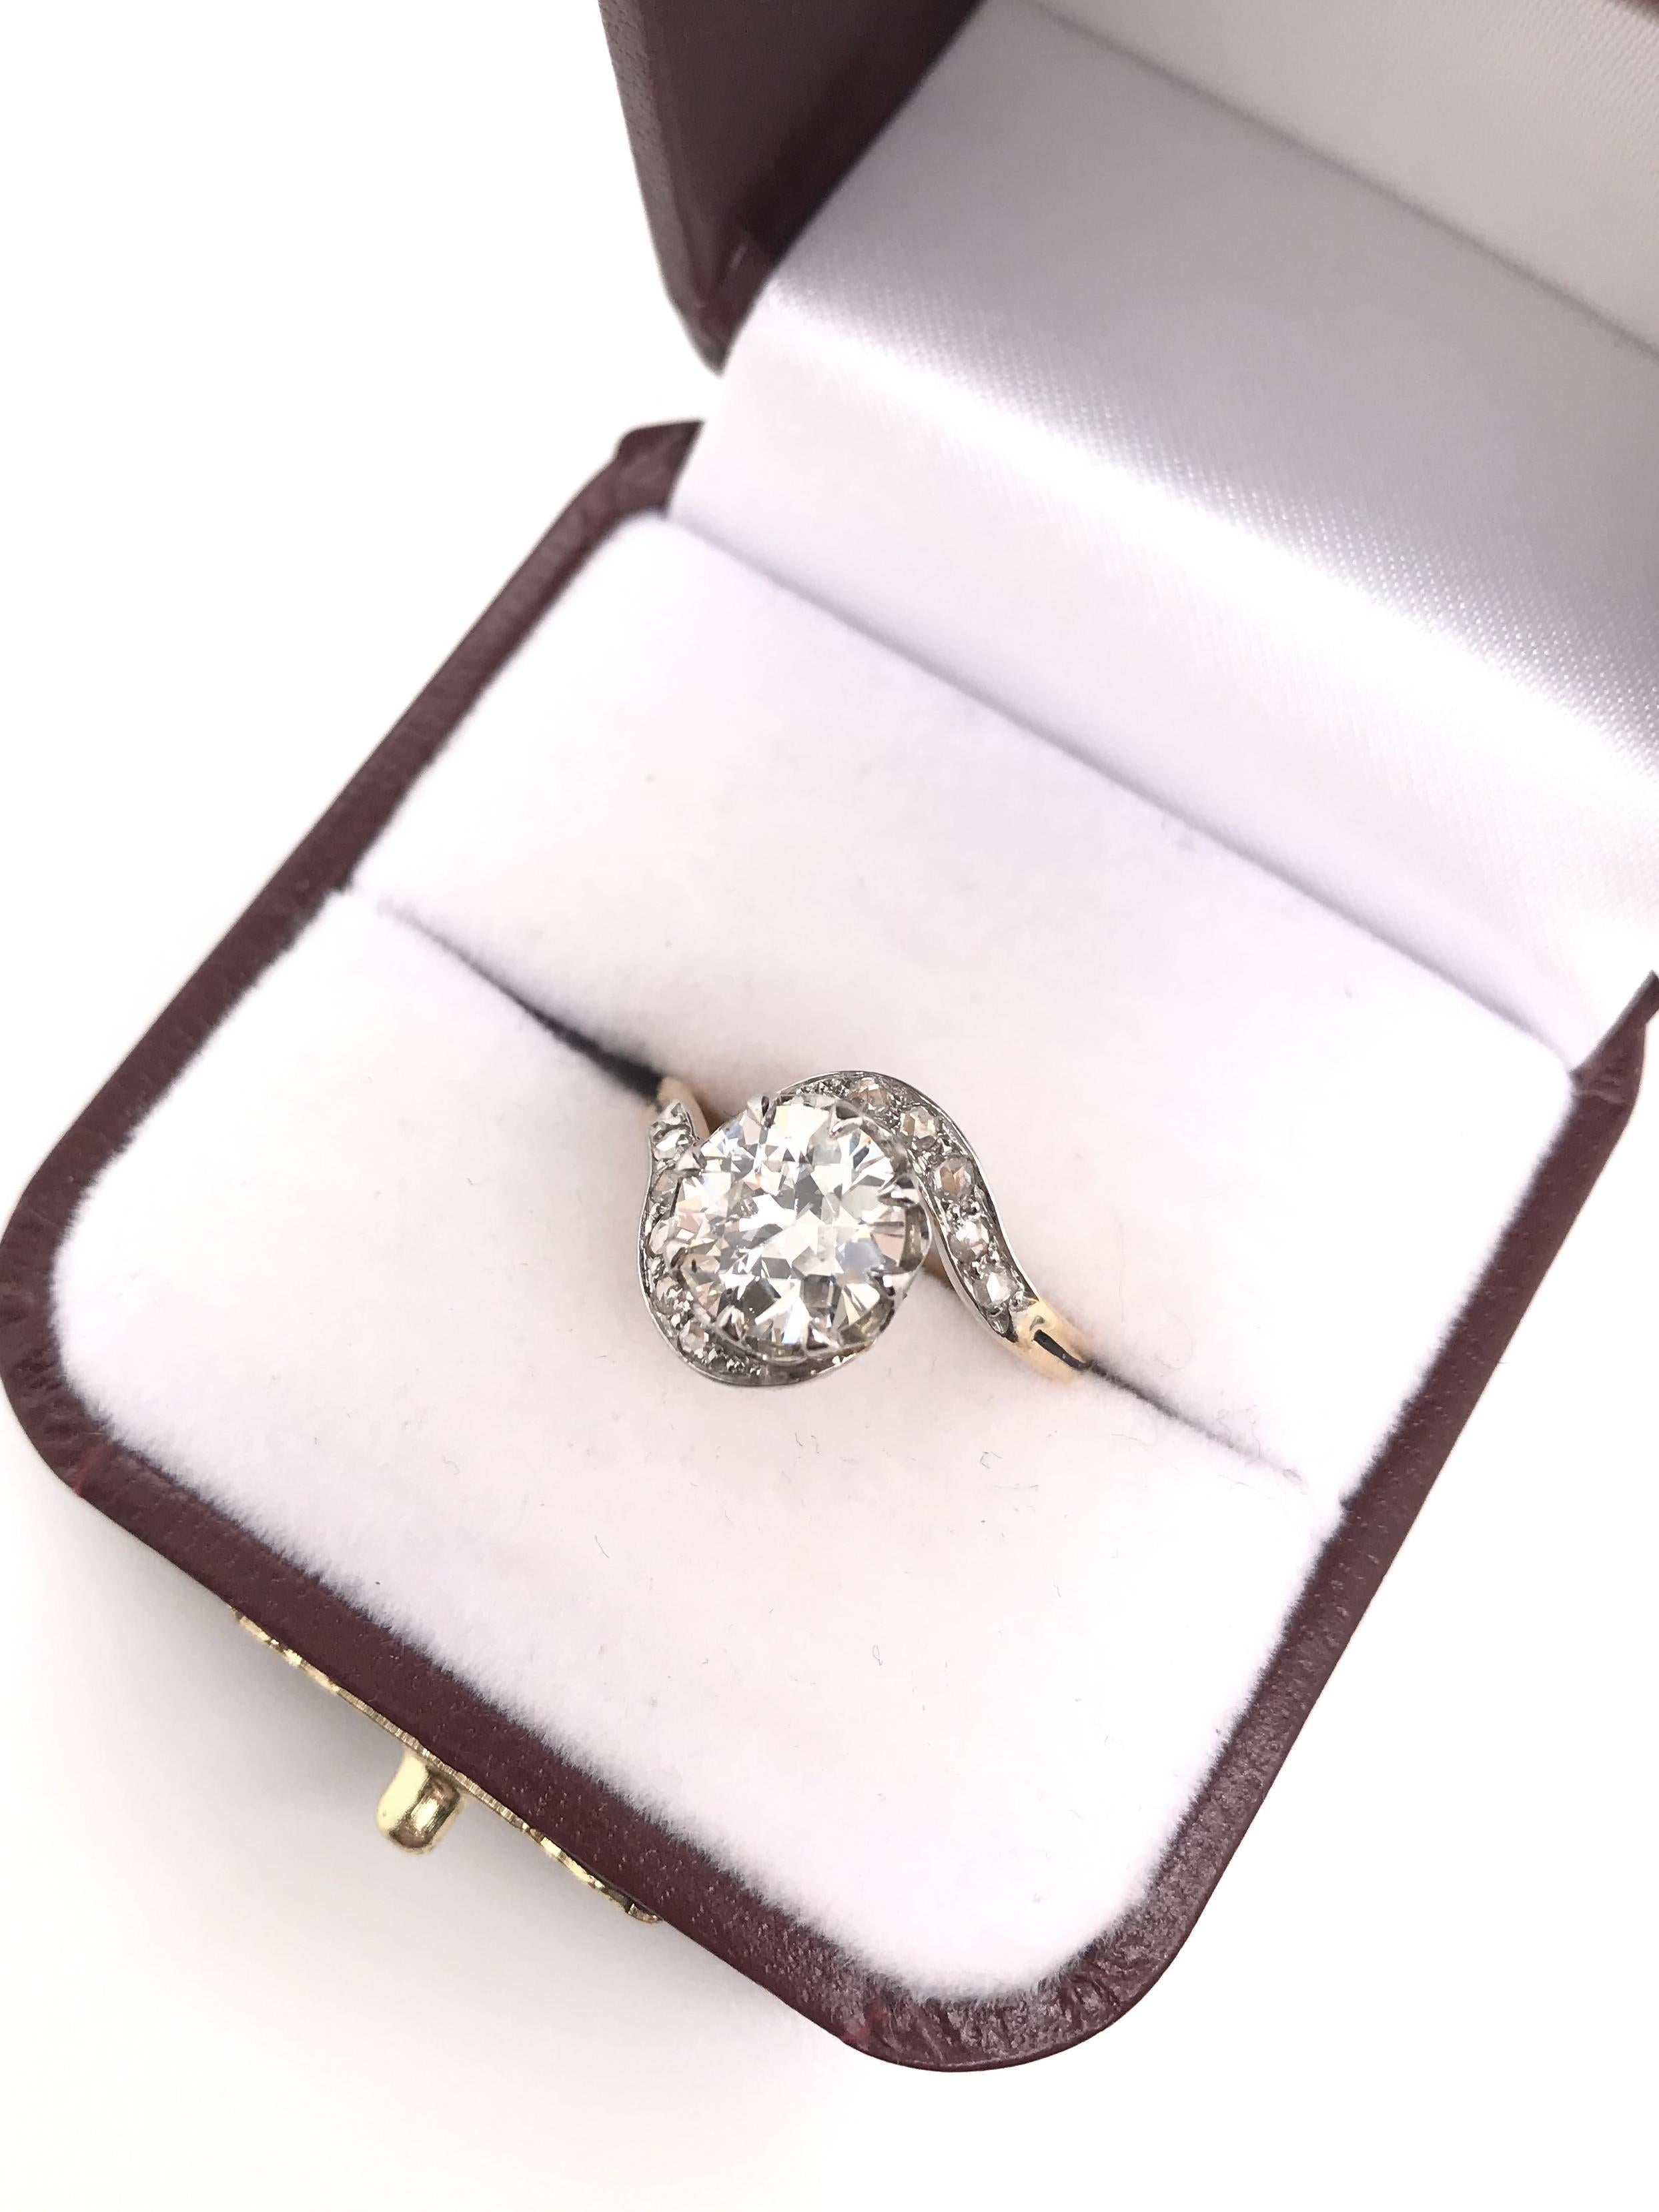 Antique Art Nouveau 1.66 Carat Diamond Ring For Sale 8